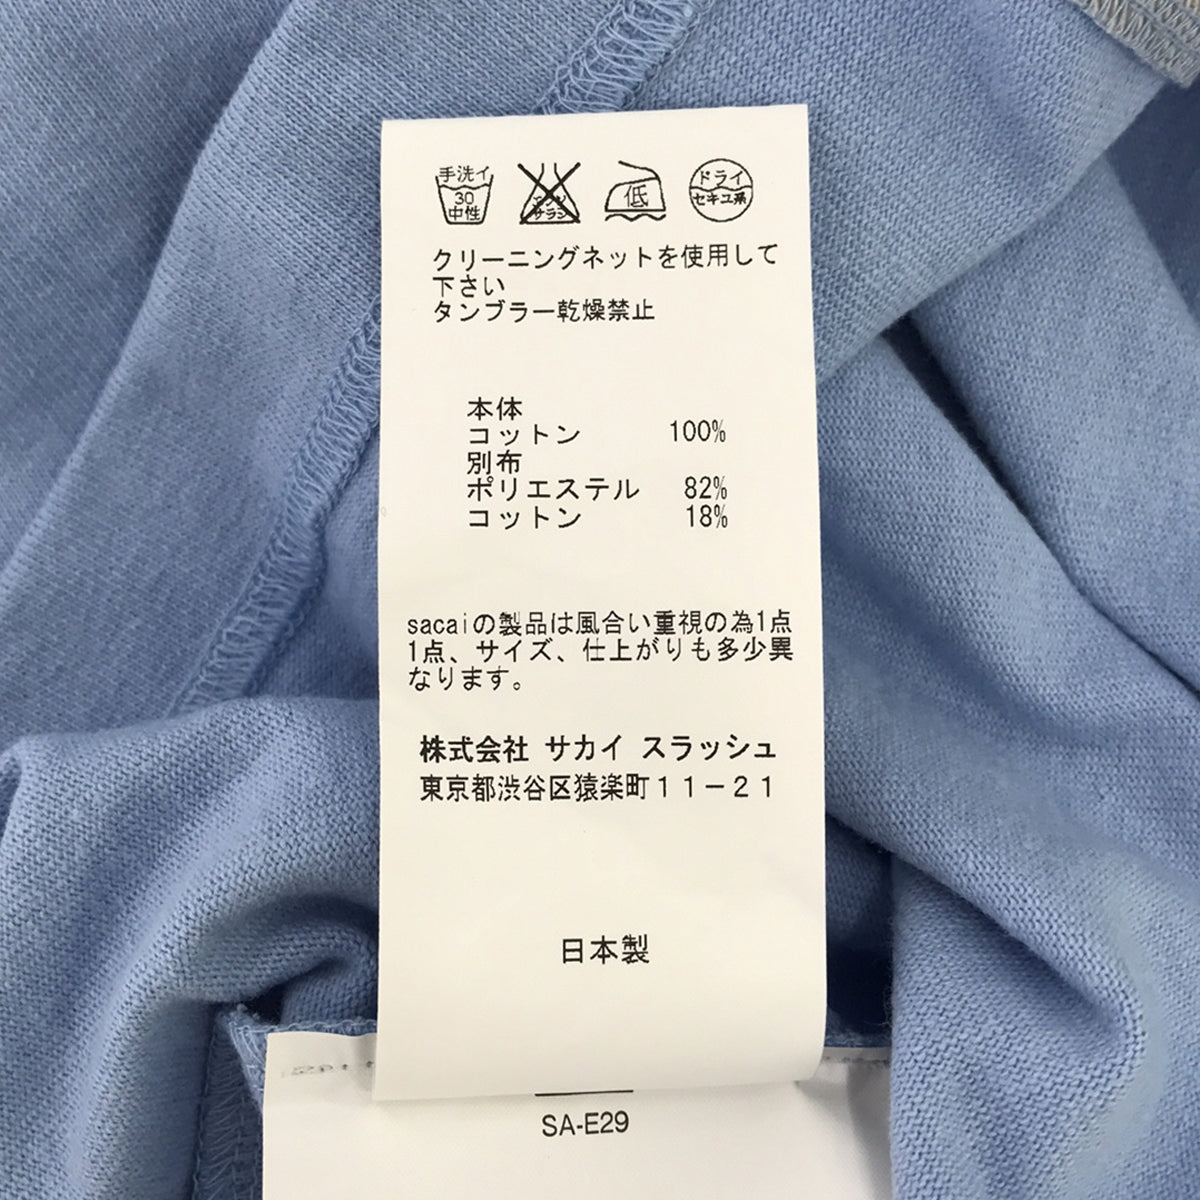 sacai / サカイ | サイドスリット バイカラーTシャツ | 3 | レディース